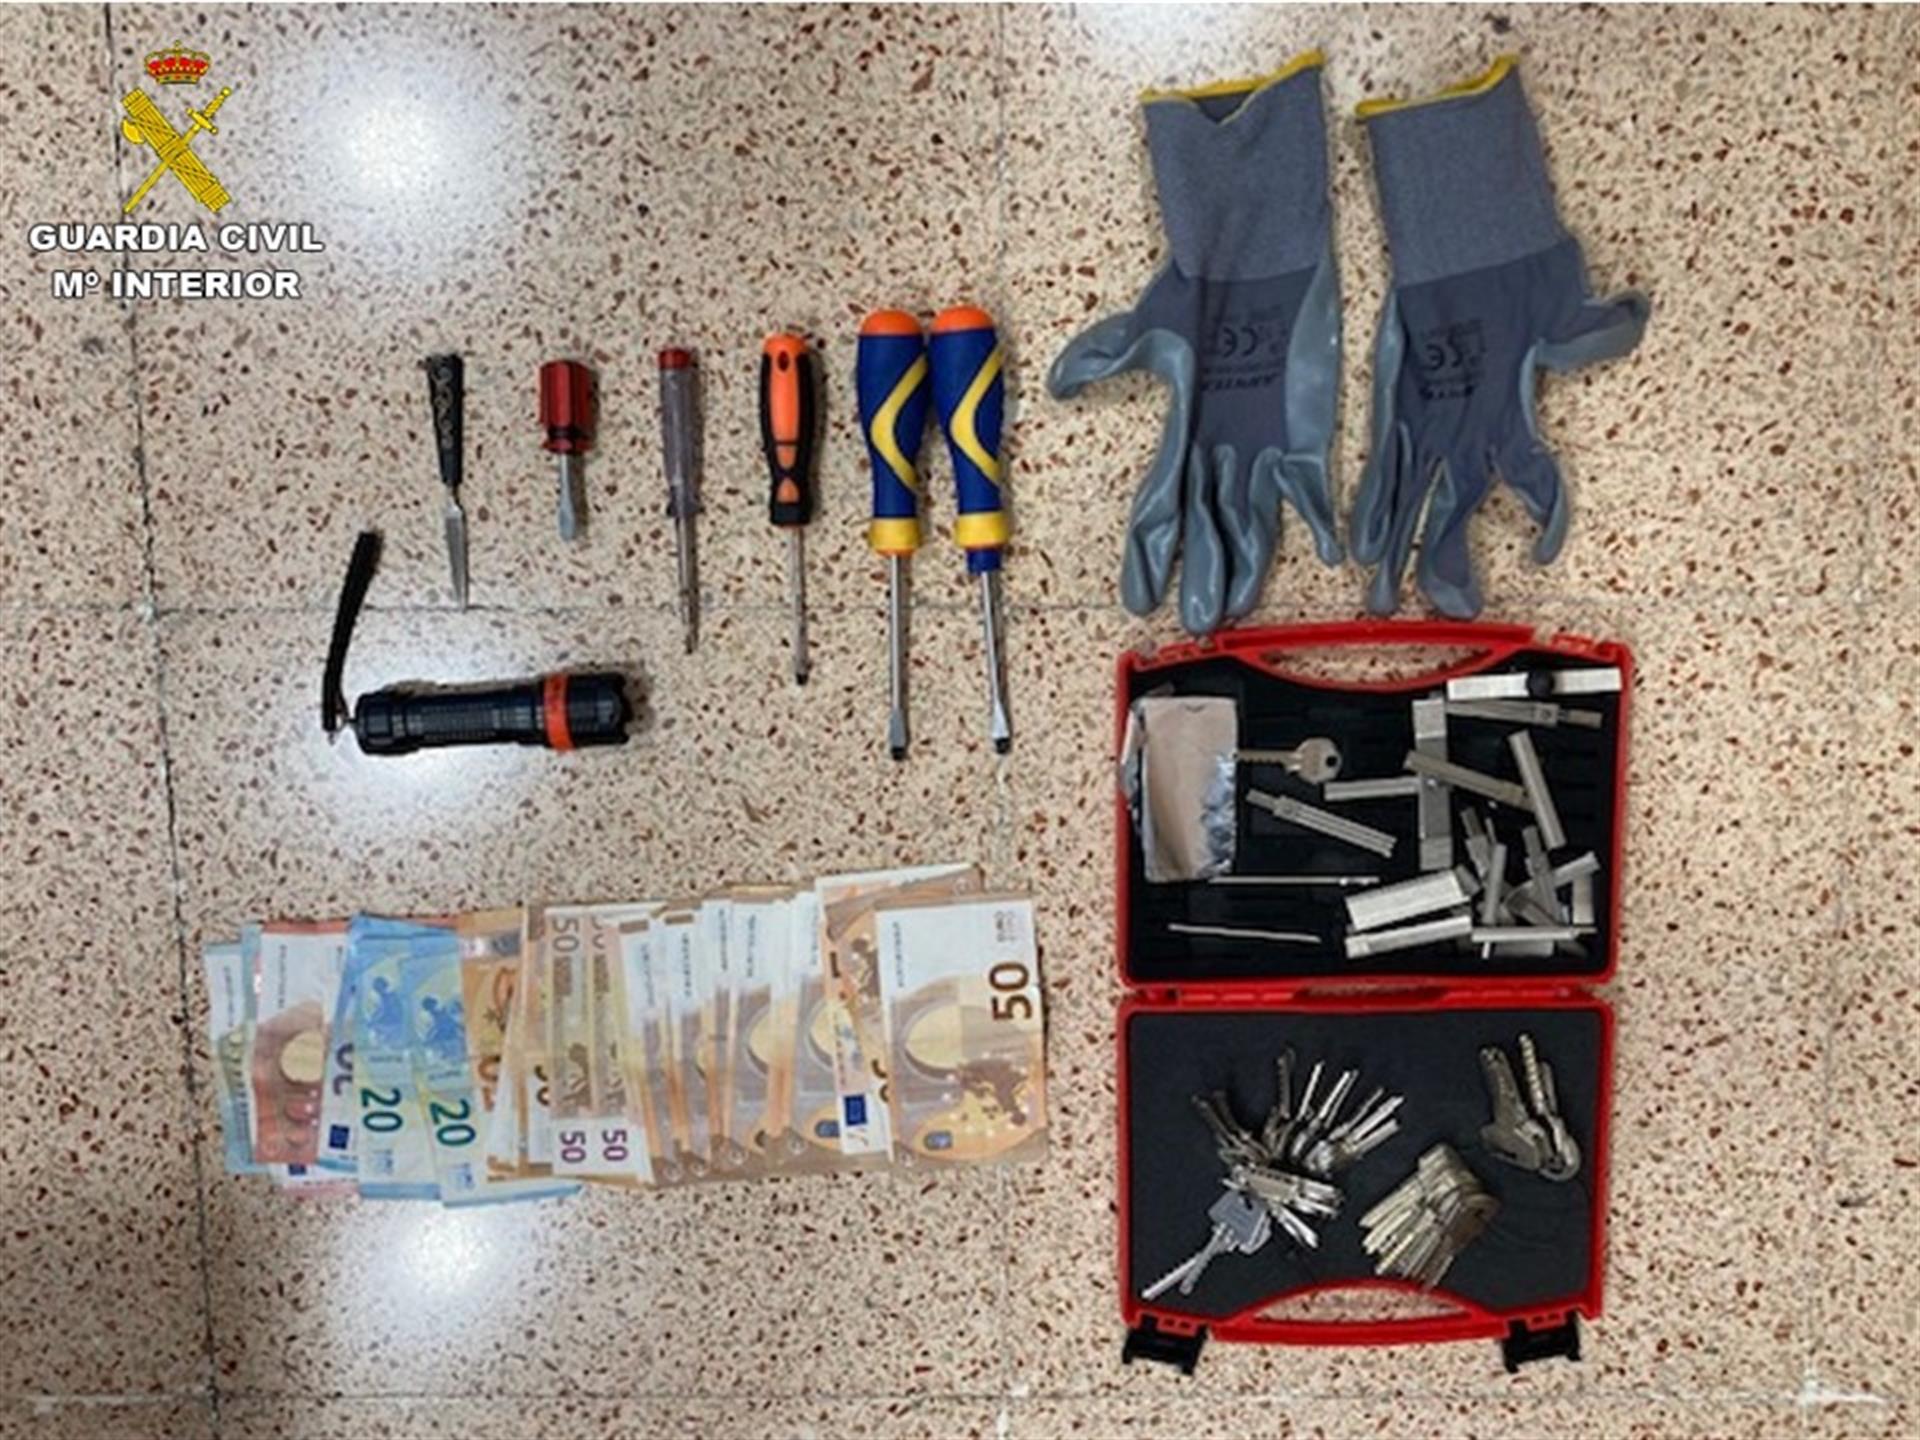 Dinero y herramientas de la banda, en una imagen de la Guardia Civil.
